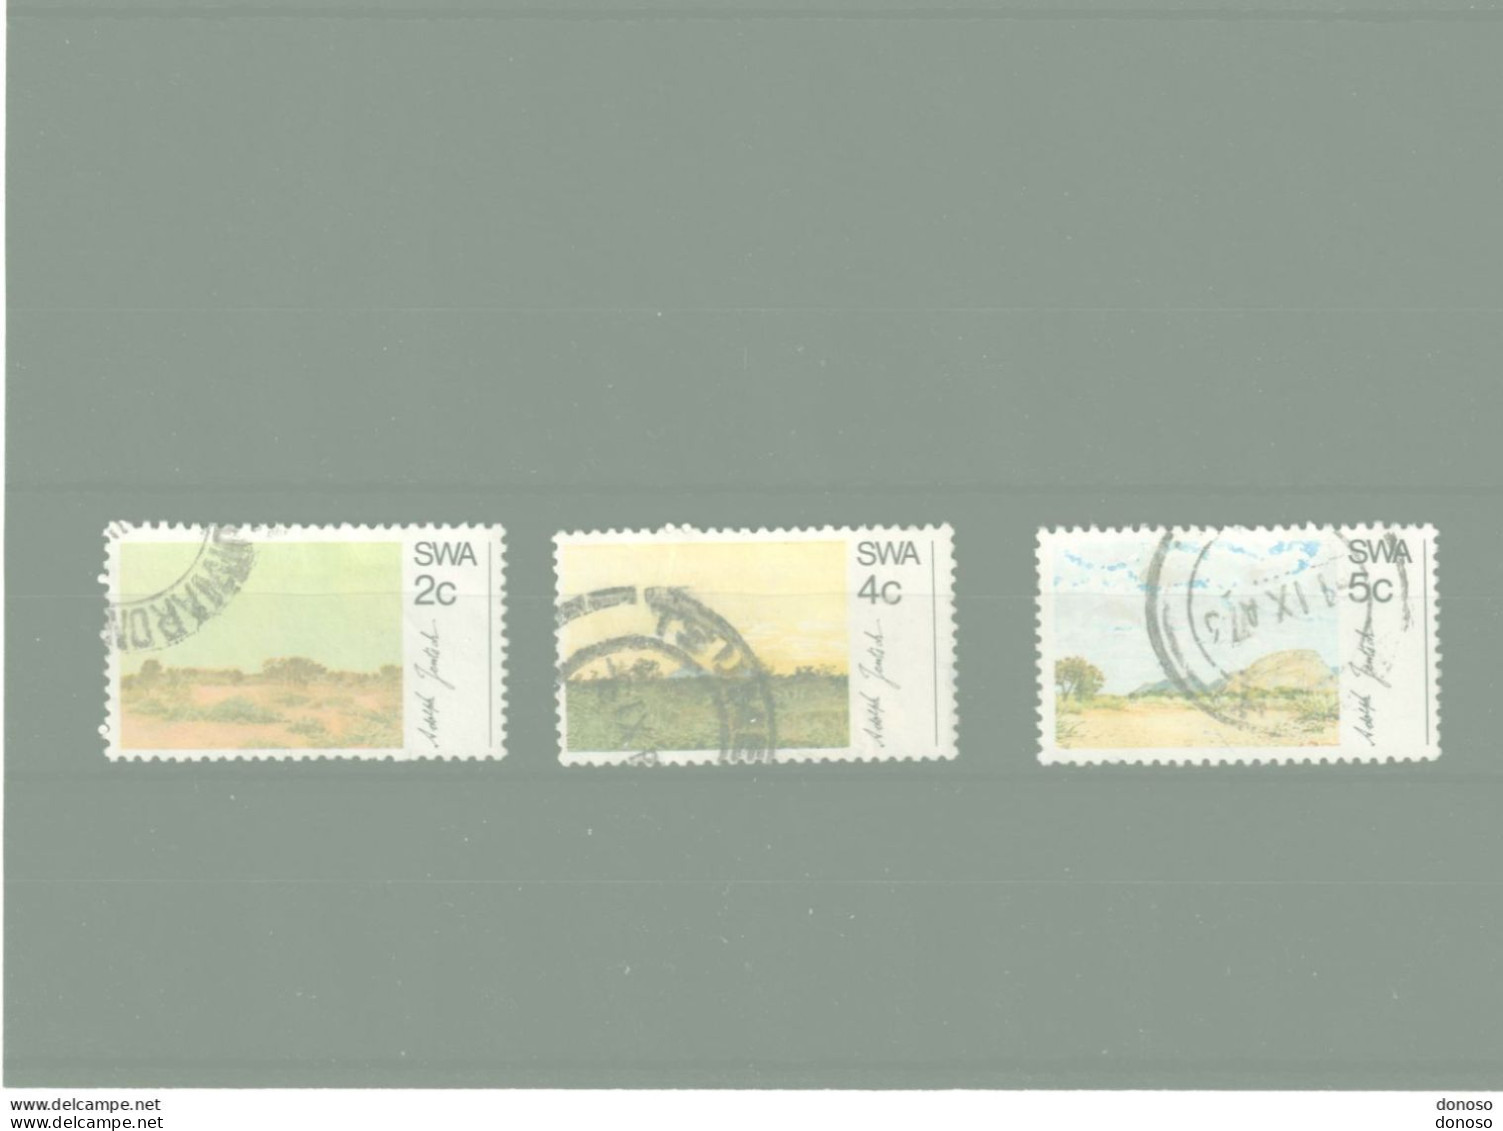 SWA SUD OUEST AFRICAIN 1973 Tableaux De Jentsch Yvert 313-315 Oblitéré Cote Yv 5 Euros - Africa Del Sud-Ovest (1923-1990)